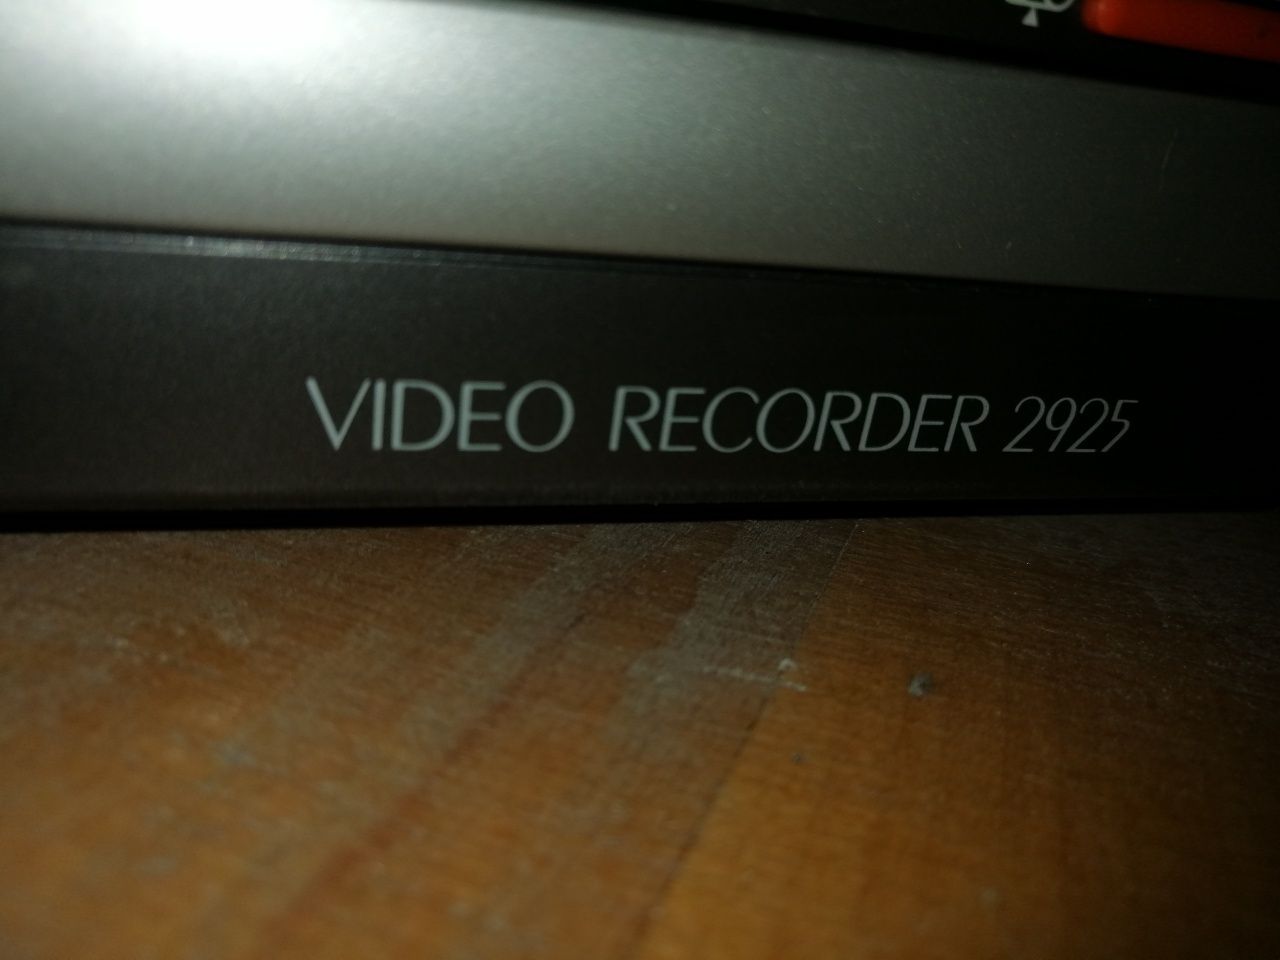 Video recorder Telefunken 2925